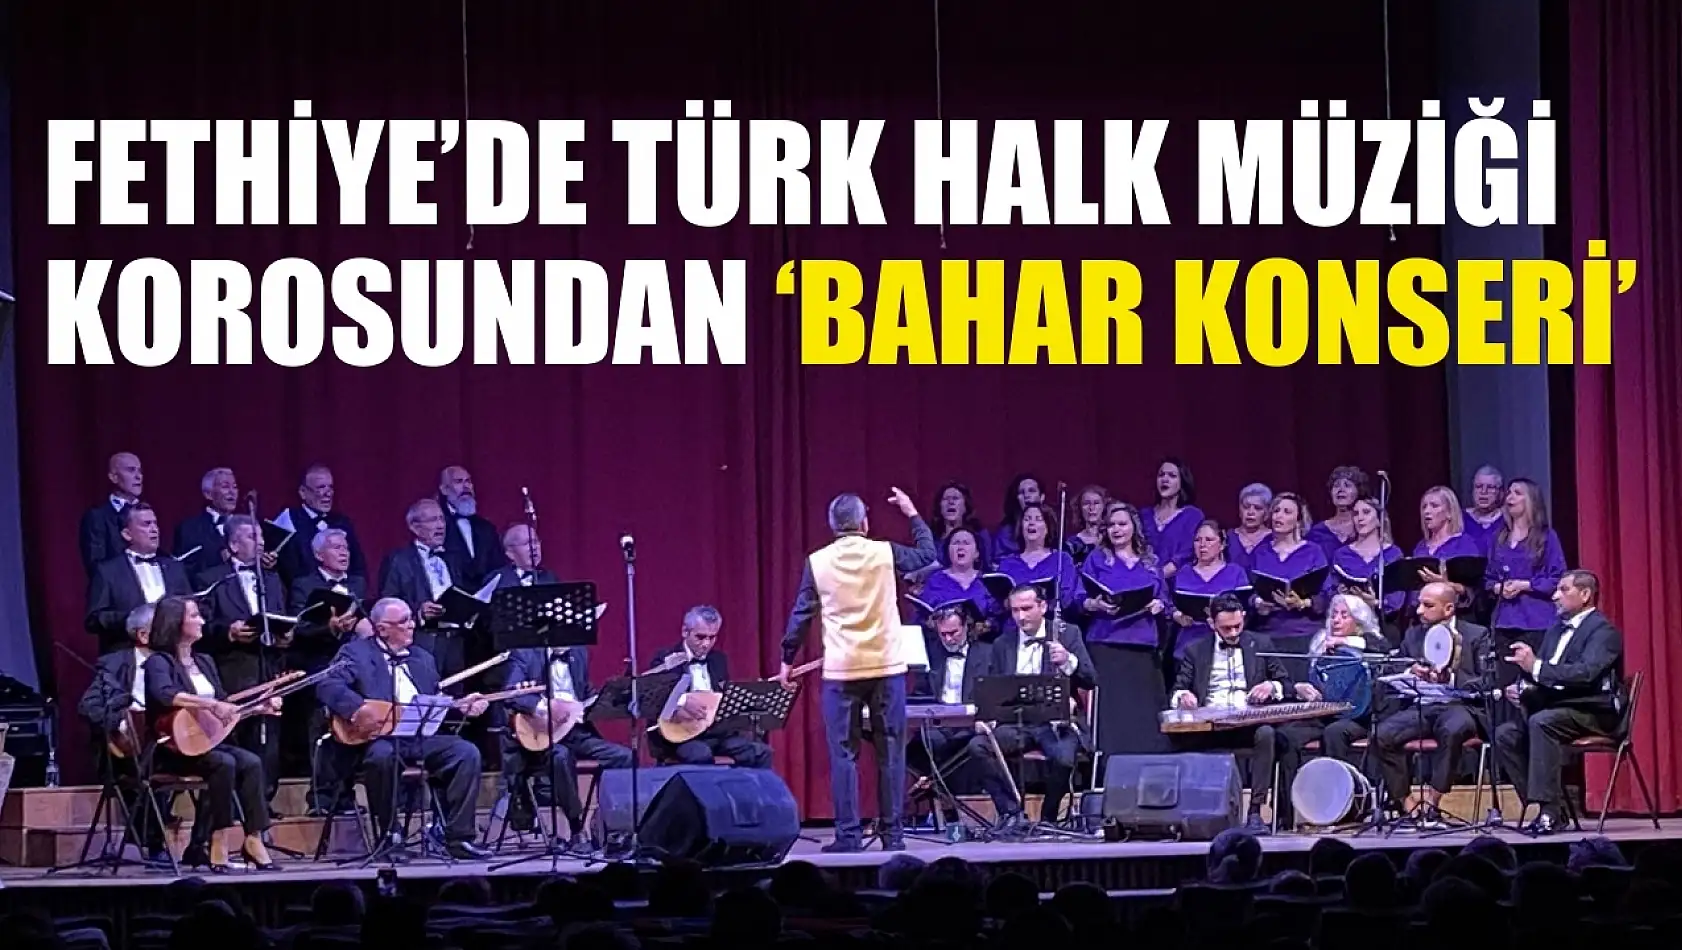 Fethiye'de Türk Halk Müziği korosundan 'Bahar Konseri'